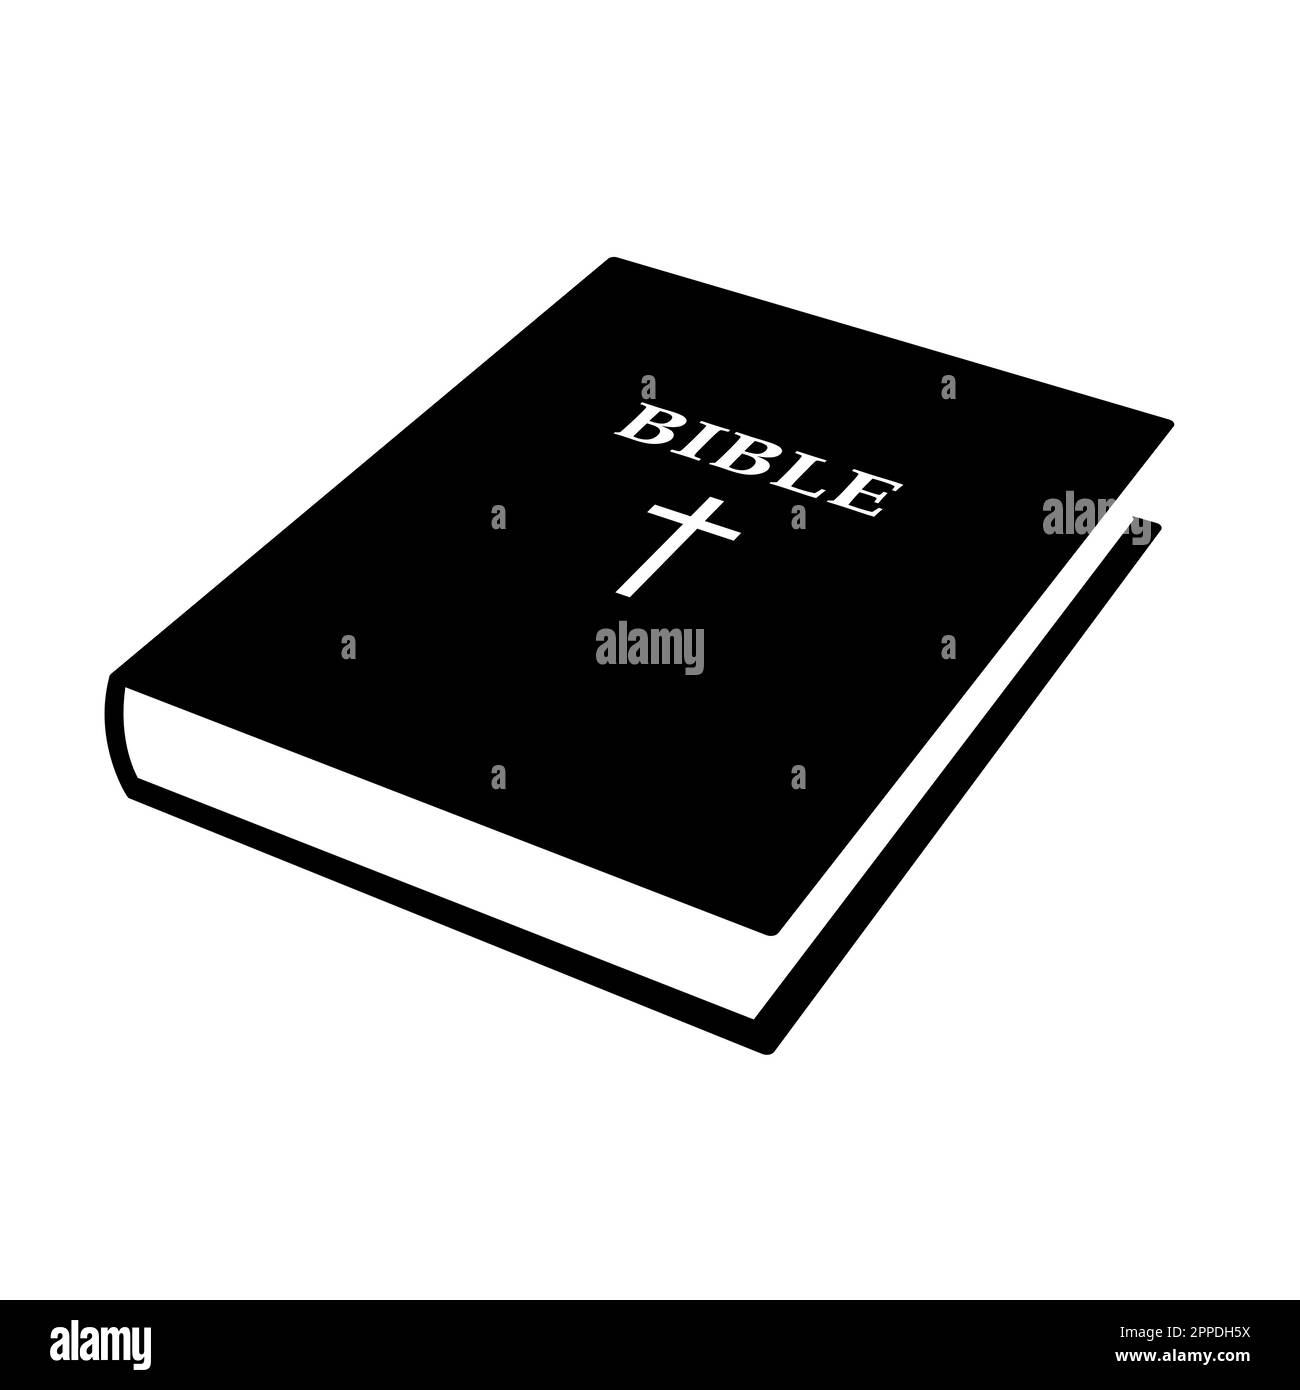 Sainte bible - illustration de vecteur de livre fermé noir et blanc isolée sur blanc Illustration de Vecteur